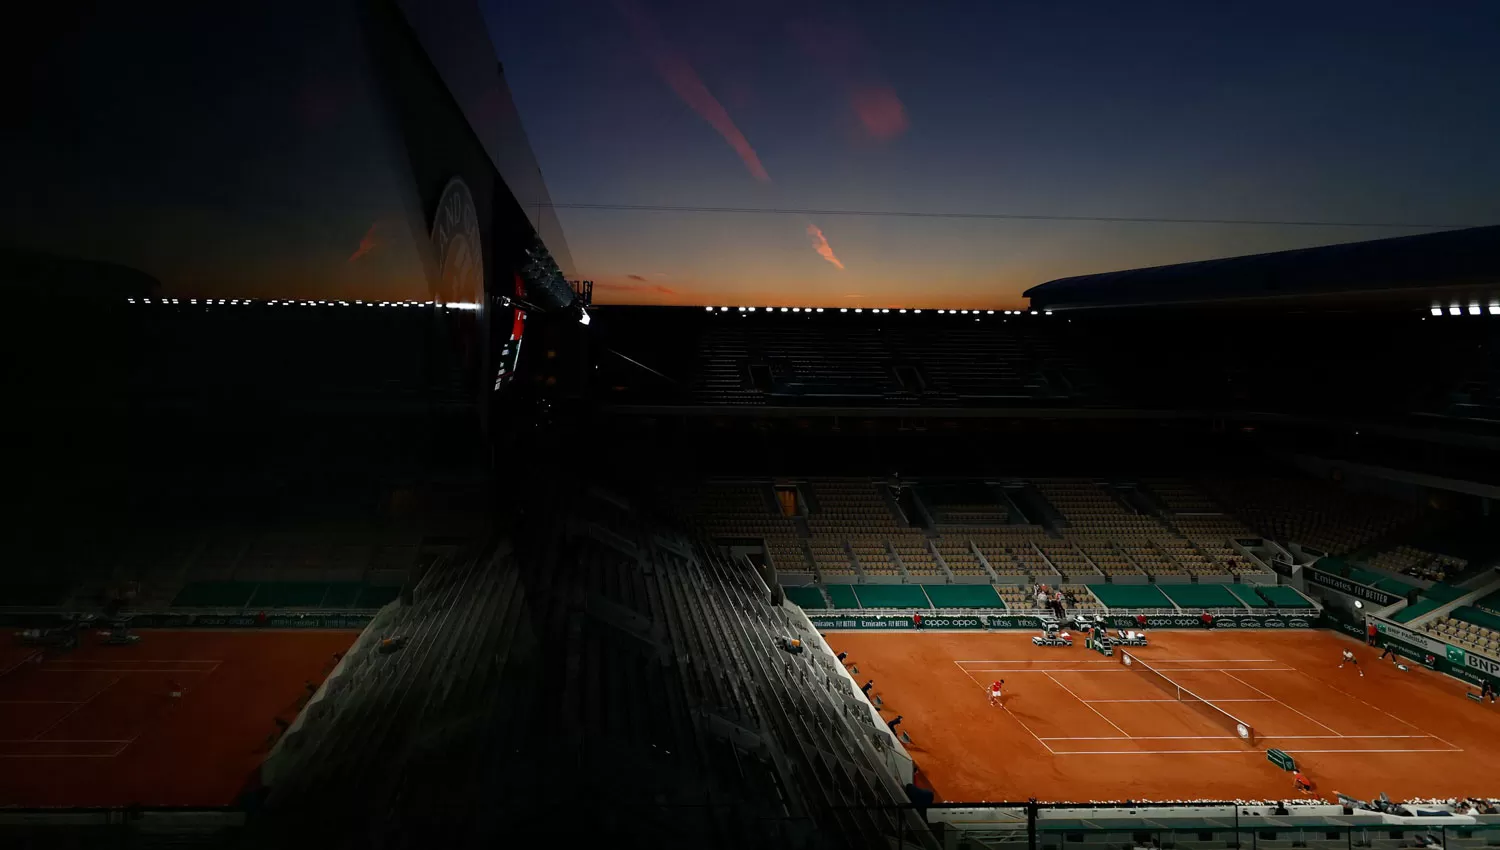 EN PARÍS. El court central de Roland Garros espera por una intensa jornada en el Grand Slam sobre polvo de ladrillo.